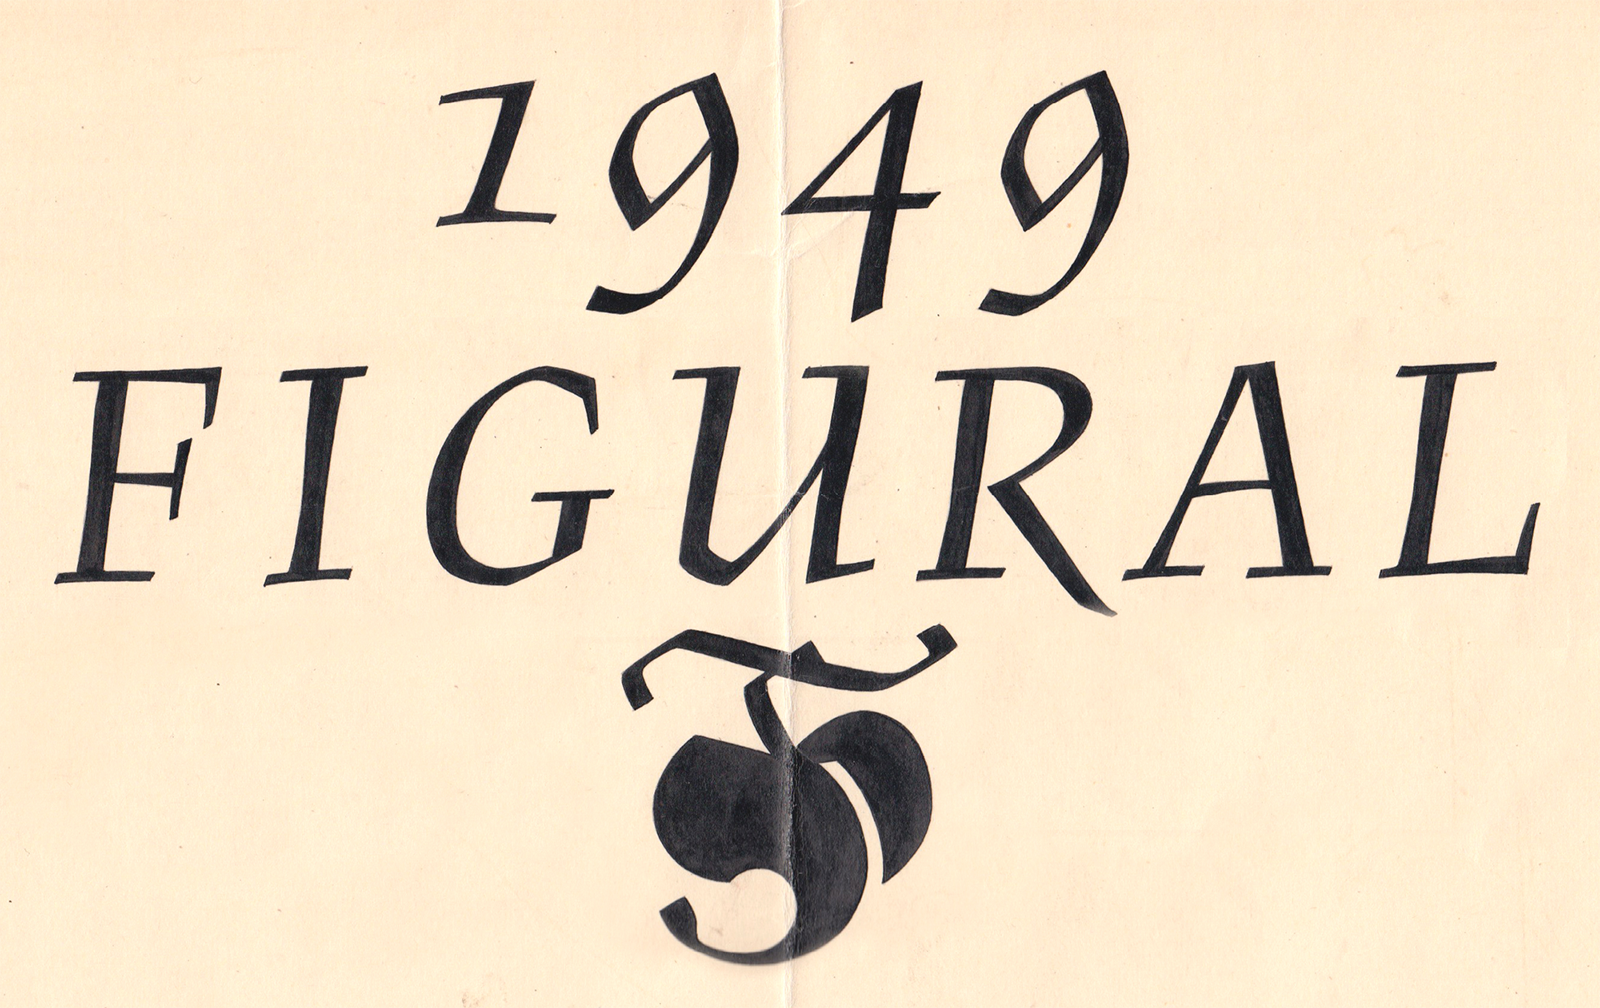 Tušový kresebný návrh písma Figural Kurziva, 1949, z archivu Stanislava Marša ml.